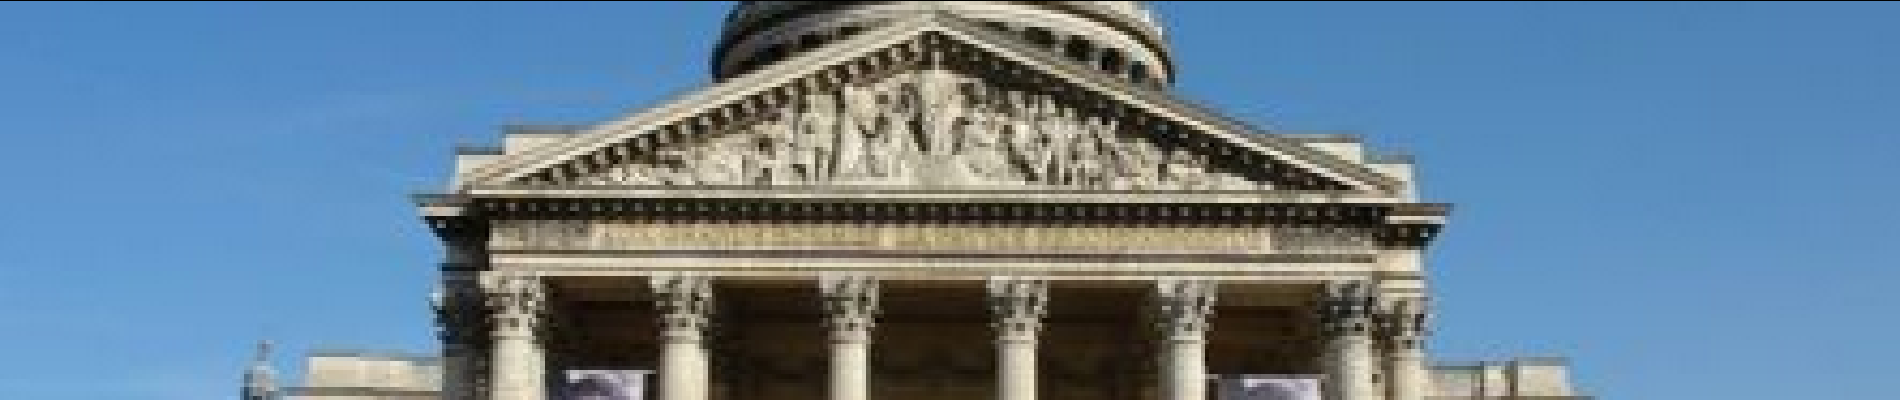 Point d'intérêt Paris - Panthéon - Photo